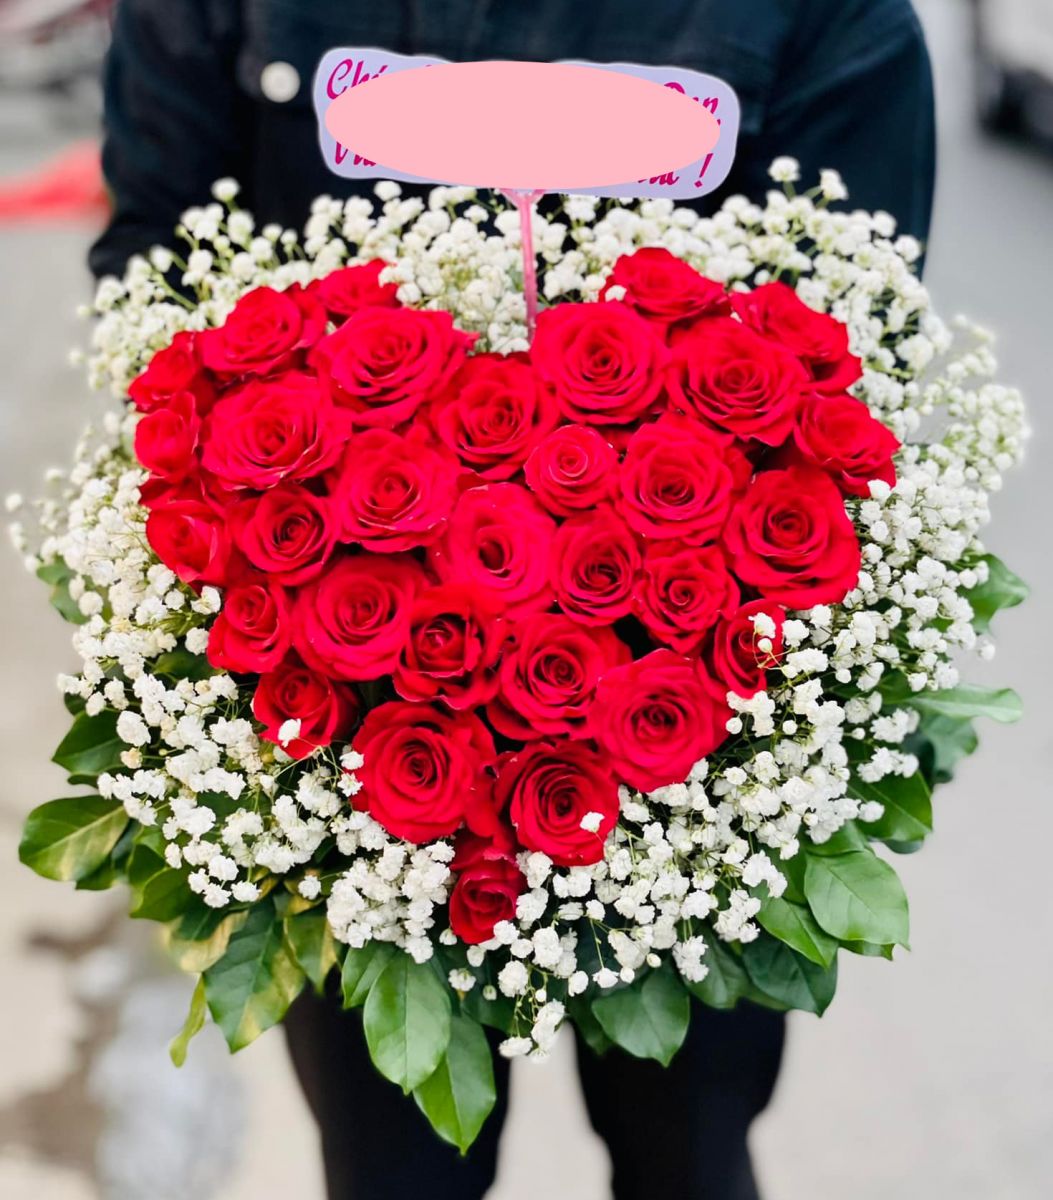 Tổng hợp mẫu hoa sinh nhật đẹp nhất Đà Nẵng